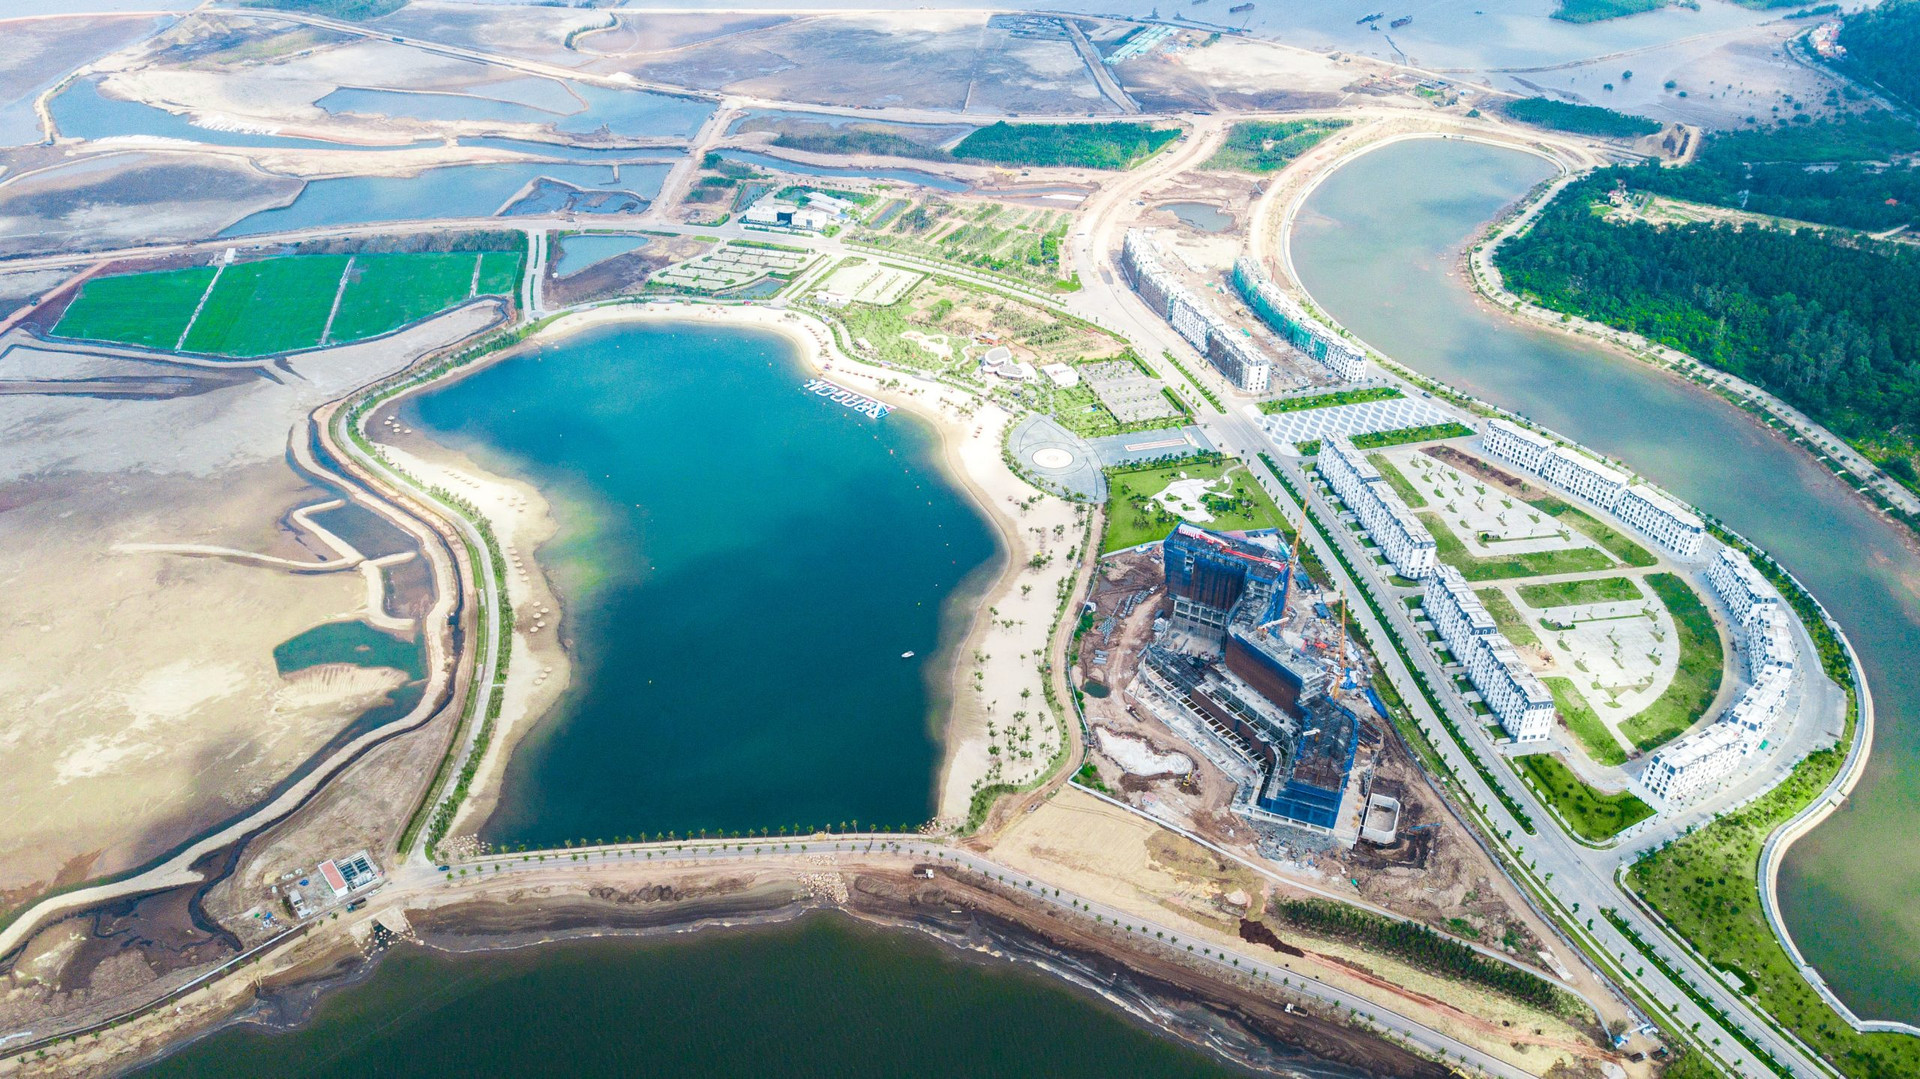 Một doanh nghiệp địa ốc muốn rót 5.000 tỷ đồng vào dự án tỷ đô Đồi Rồng do Geleximco phát triển ở Hải Phòng - Ảnh 1.